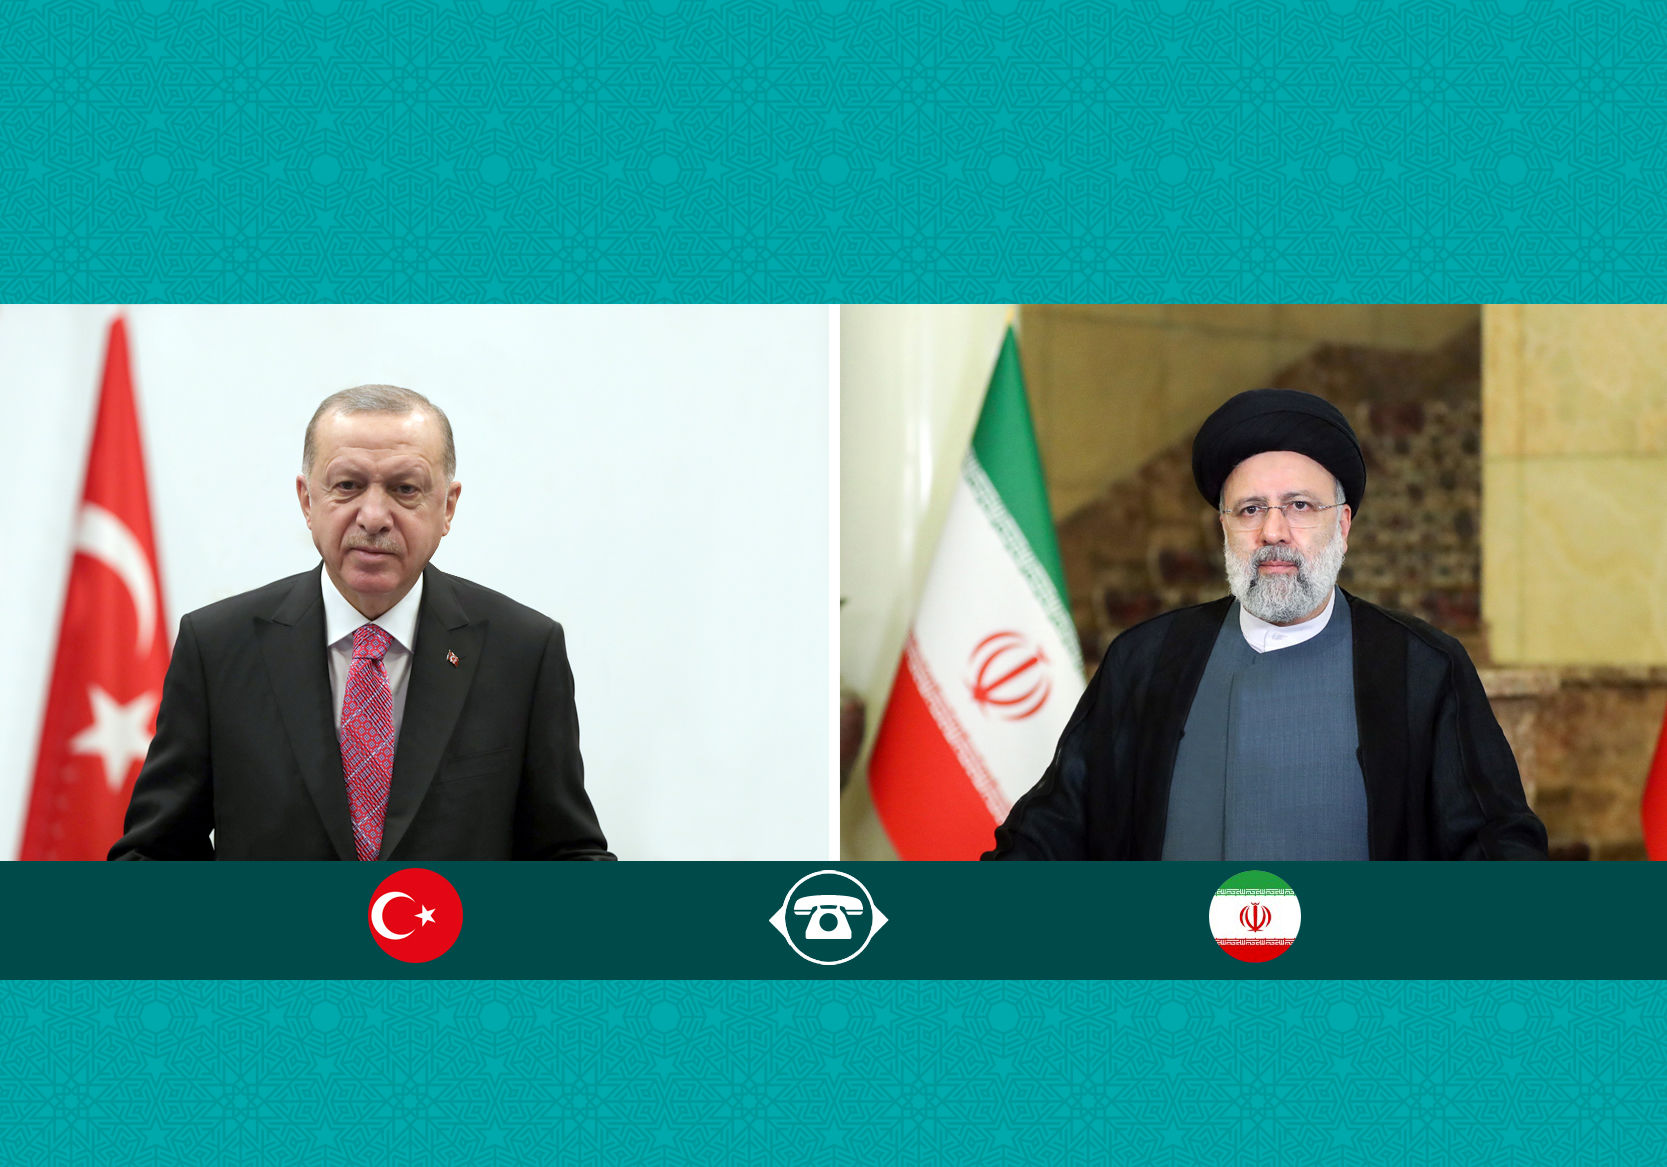 محور گفتگوی تلفنی ابراهیم رئیسی و اردوغان